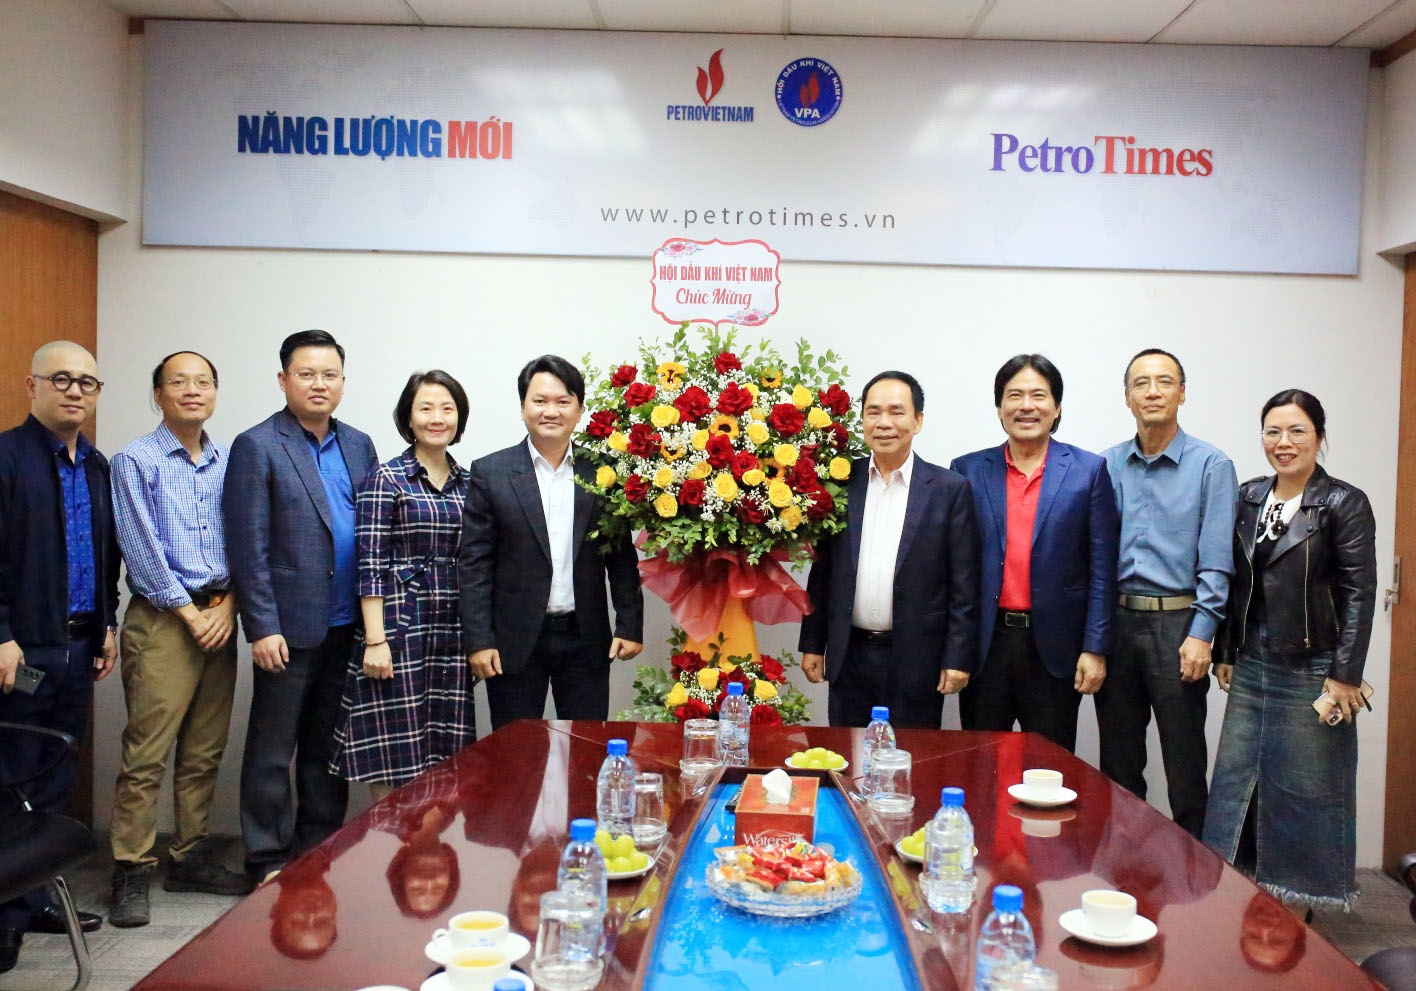 Lãnh đạo Hội Dầu khí Việt Nam tặng hoa chúc mừng Tạp chí Năng lượng Mới - PetroTimes